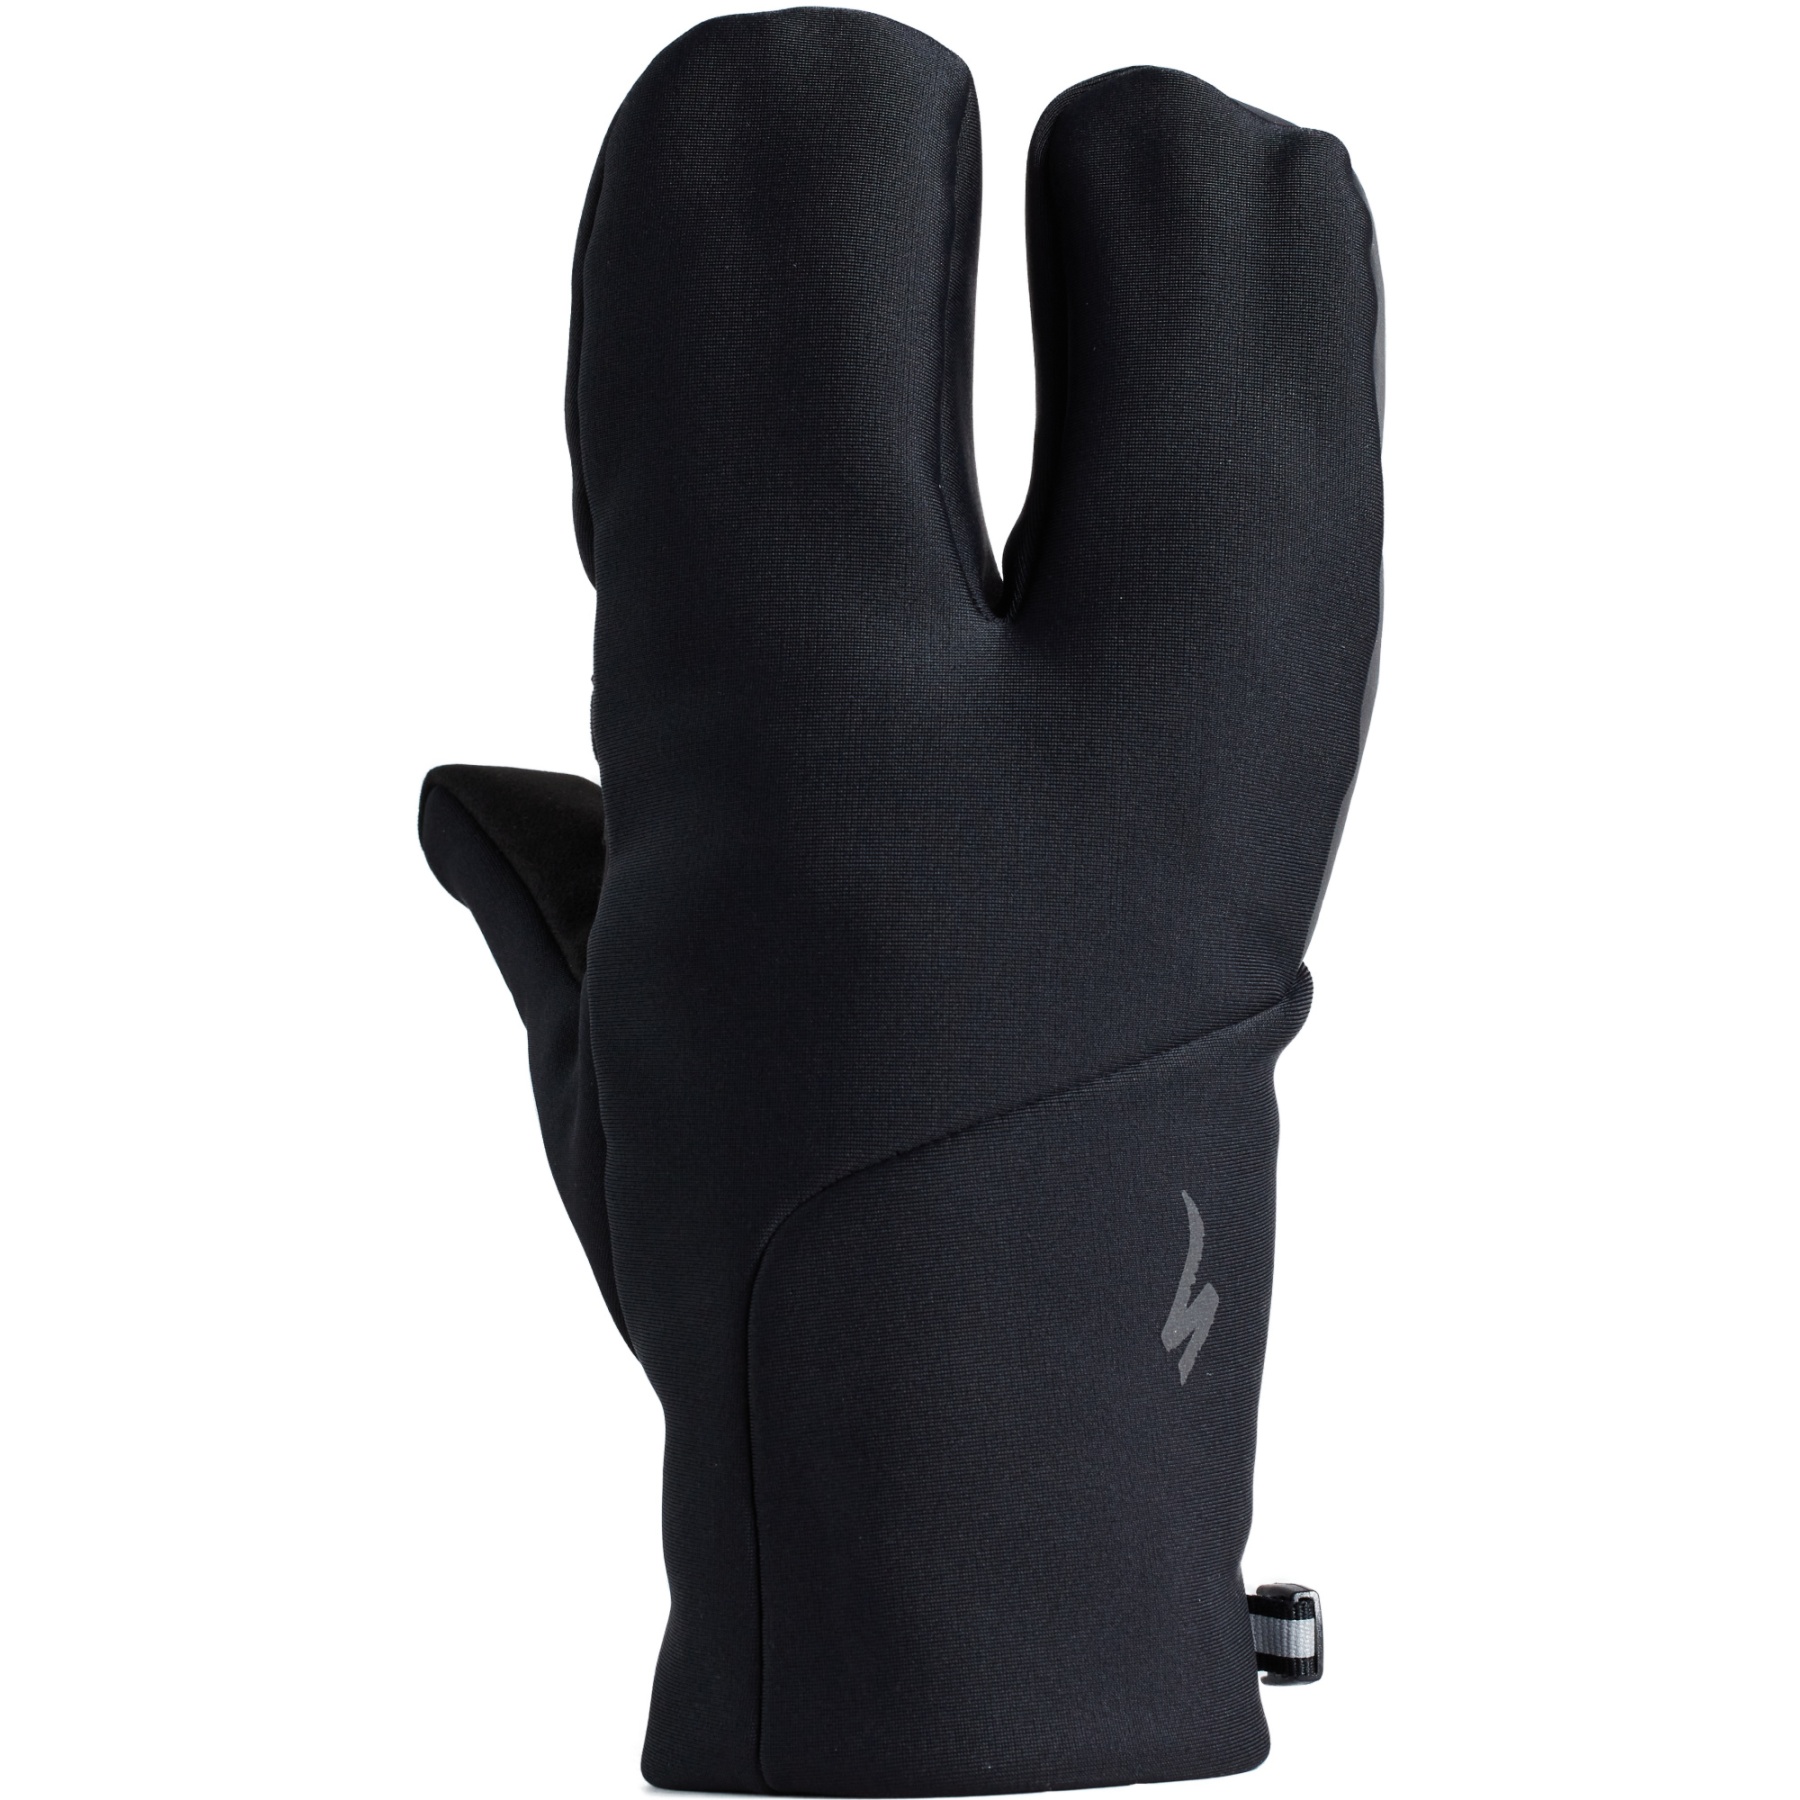 Bild von Specialized Softshell Deep Winter Lobster Handschuhe - schwarz 67222-310